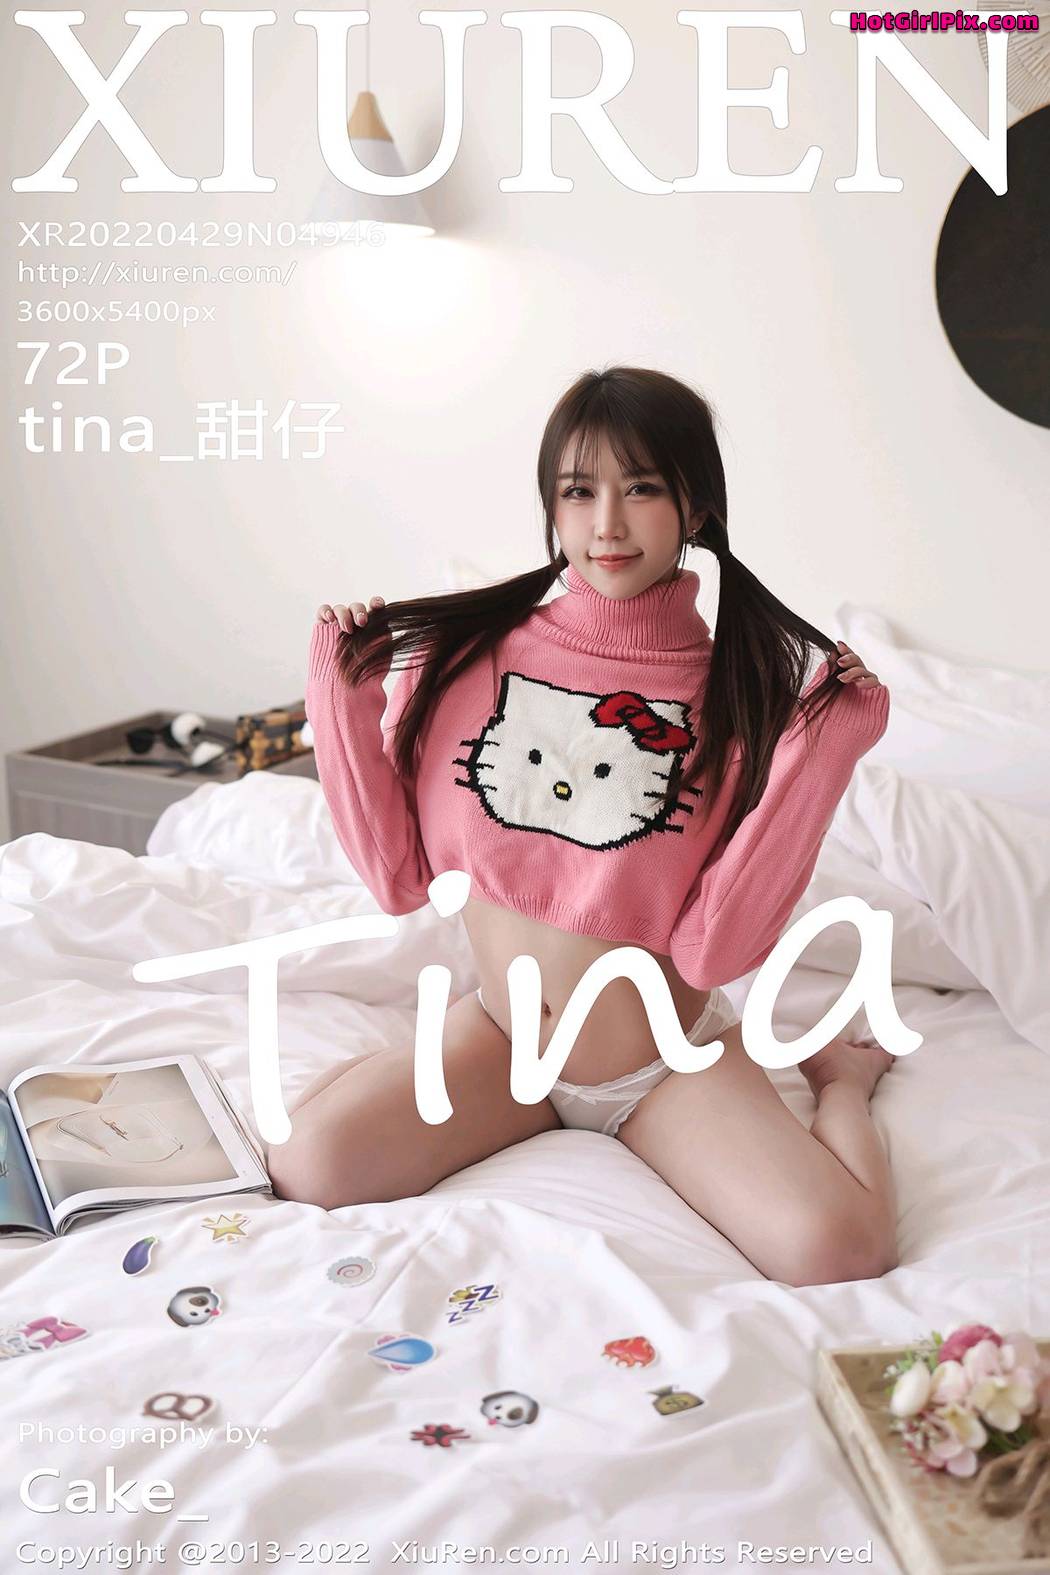 [XIUREN] No.4946 tina_甜仔 Cover Photo